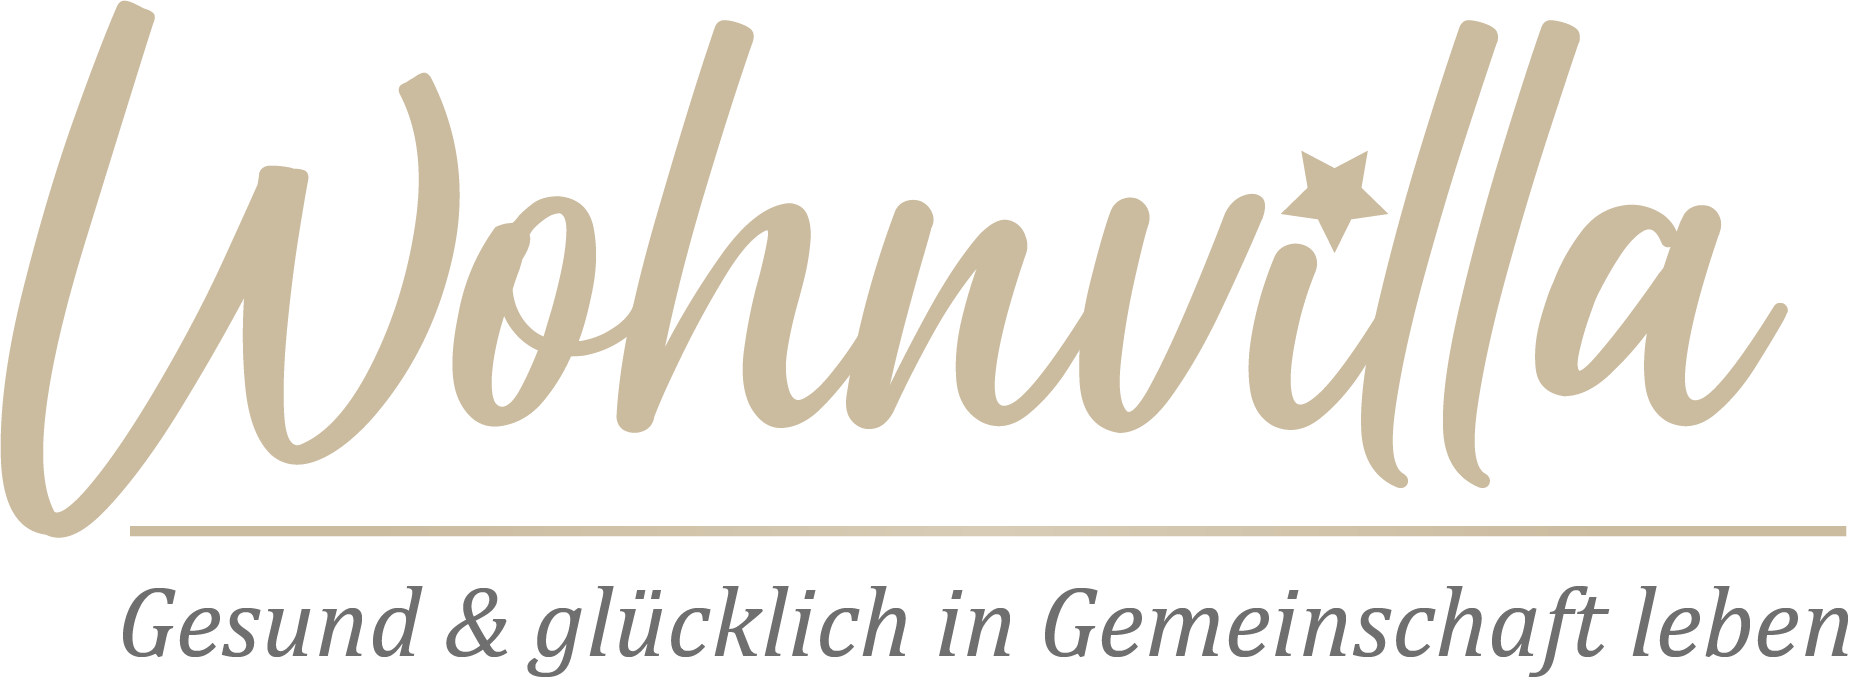 wohnvilla logo neuer sloagn